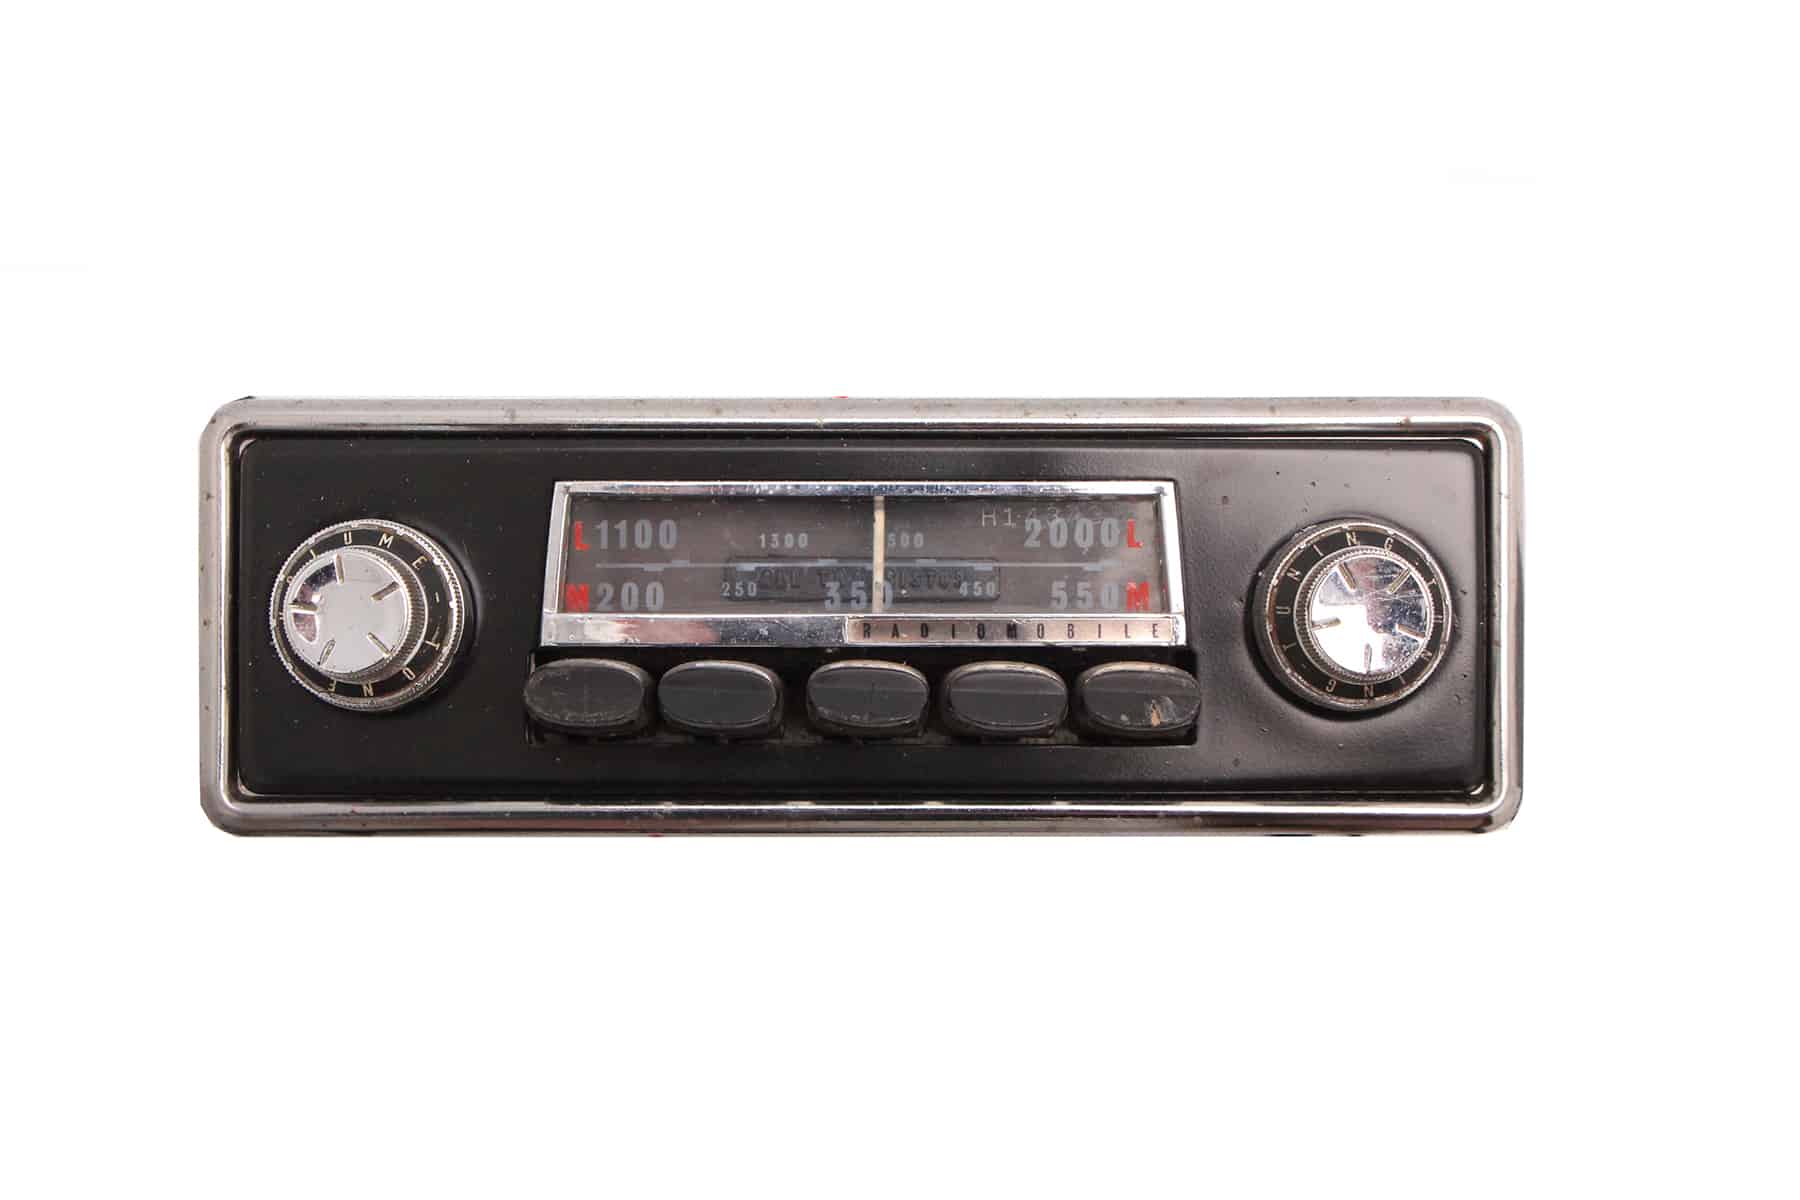 Radiomobile Vintage Radio